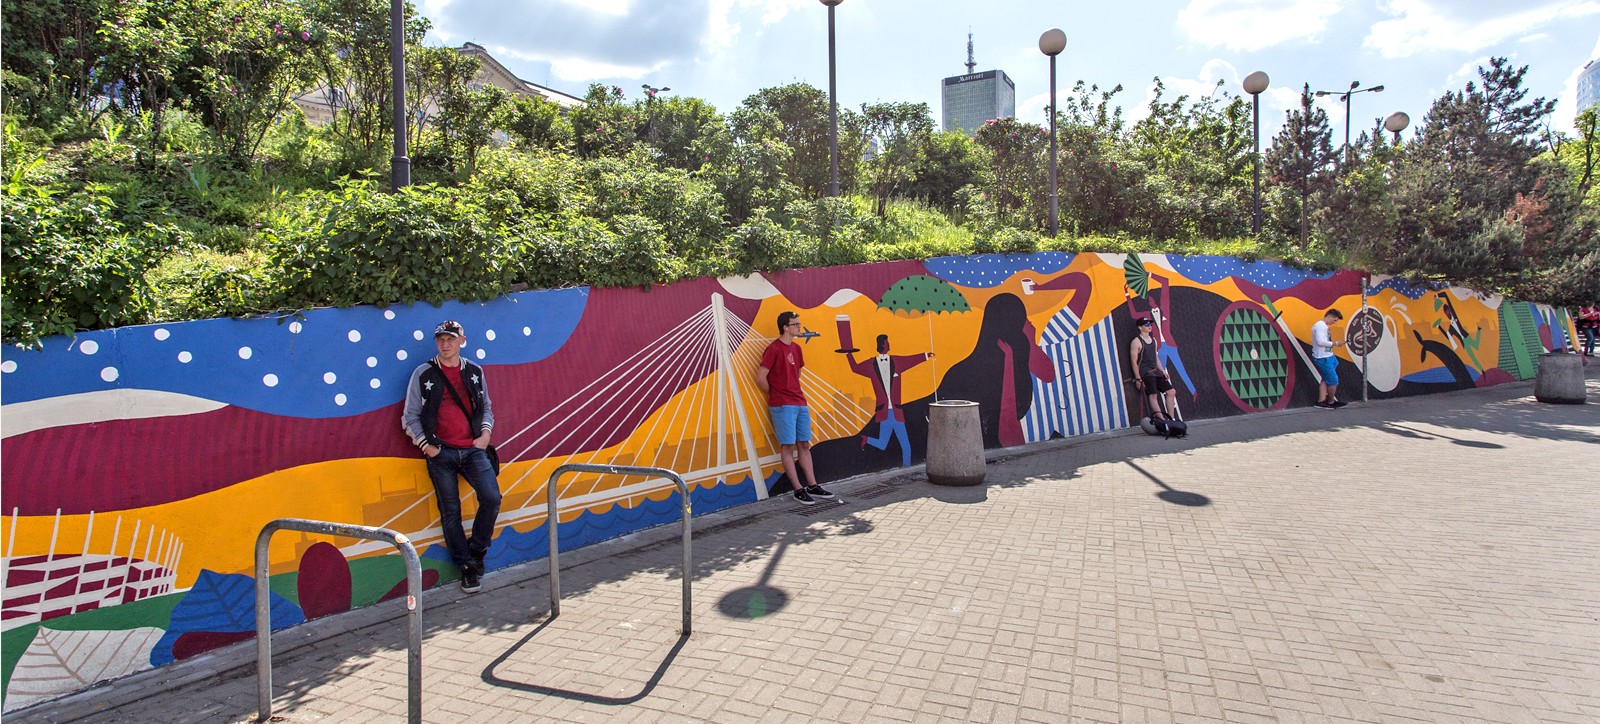 Plac przy metrze centrum w Warszawie z namalowanym przez artystów muralem z okazji kampanii reklamowej marki Costa Coffee | kampania murali dla Costa Coffee - Polscy ilustratorzy | Portfolio